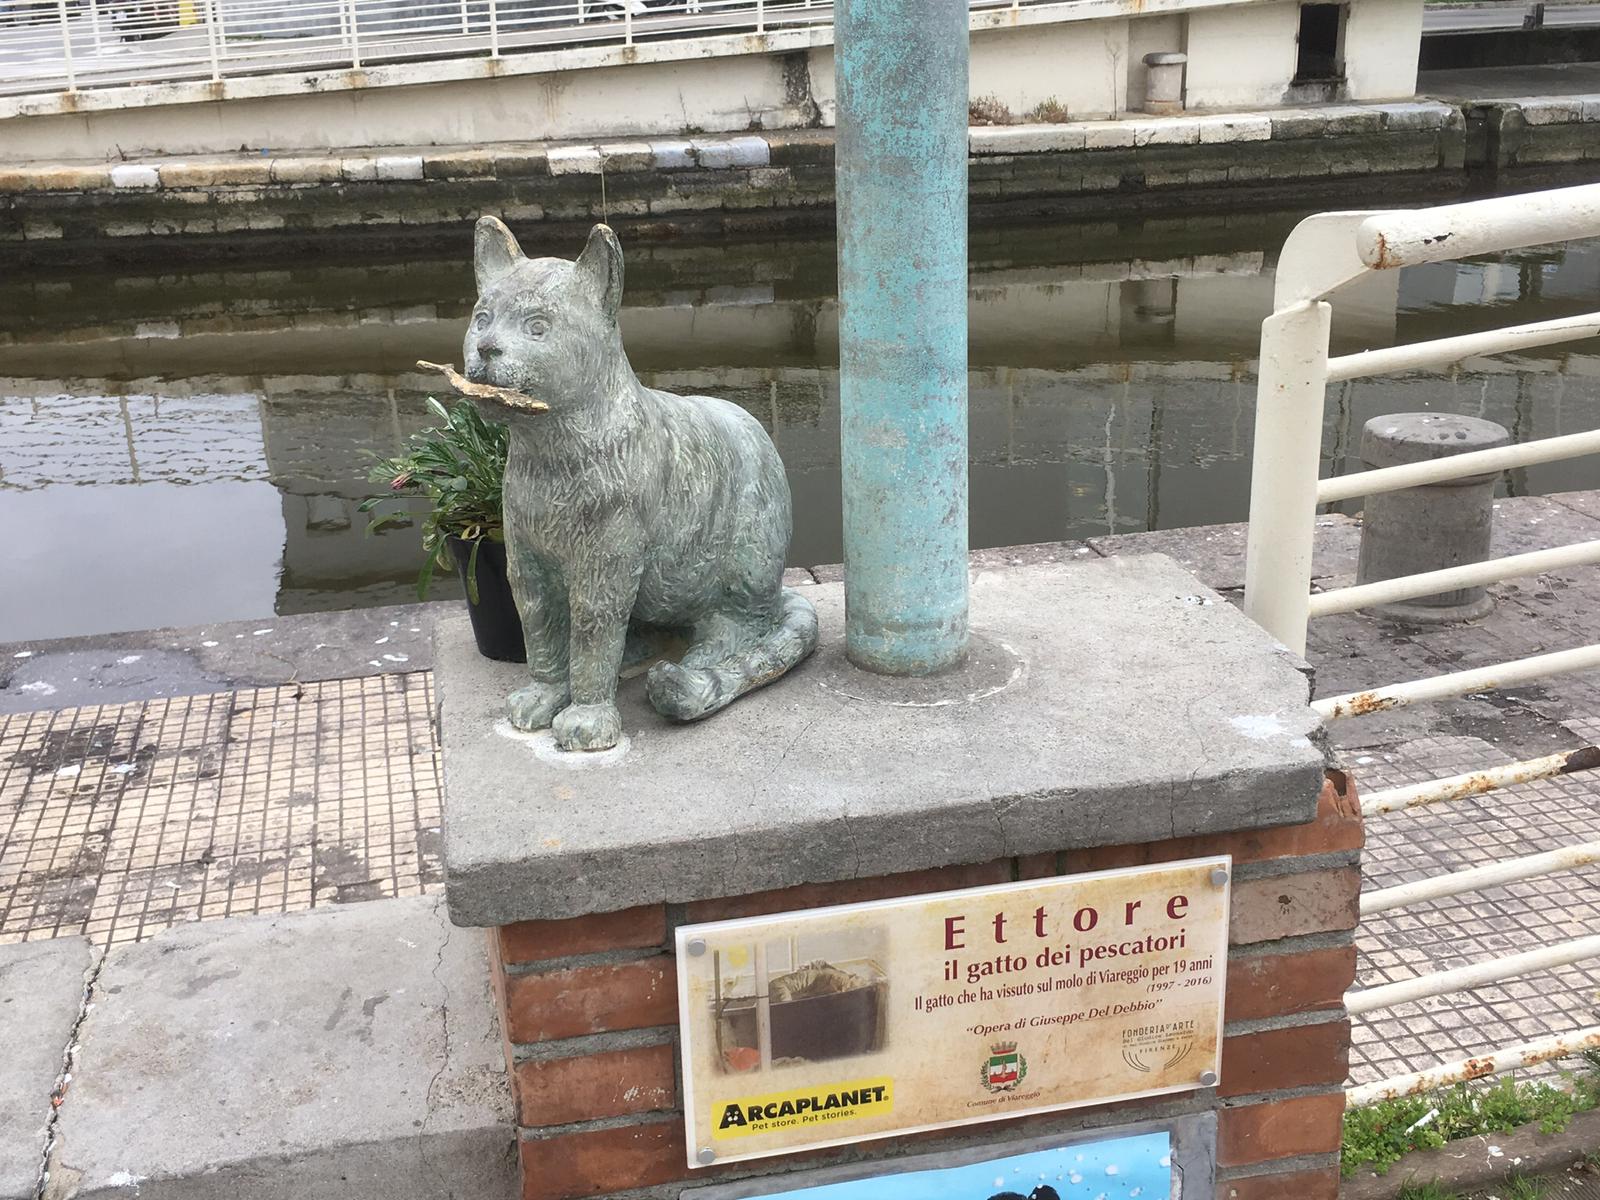 A sculpture of a cat